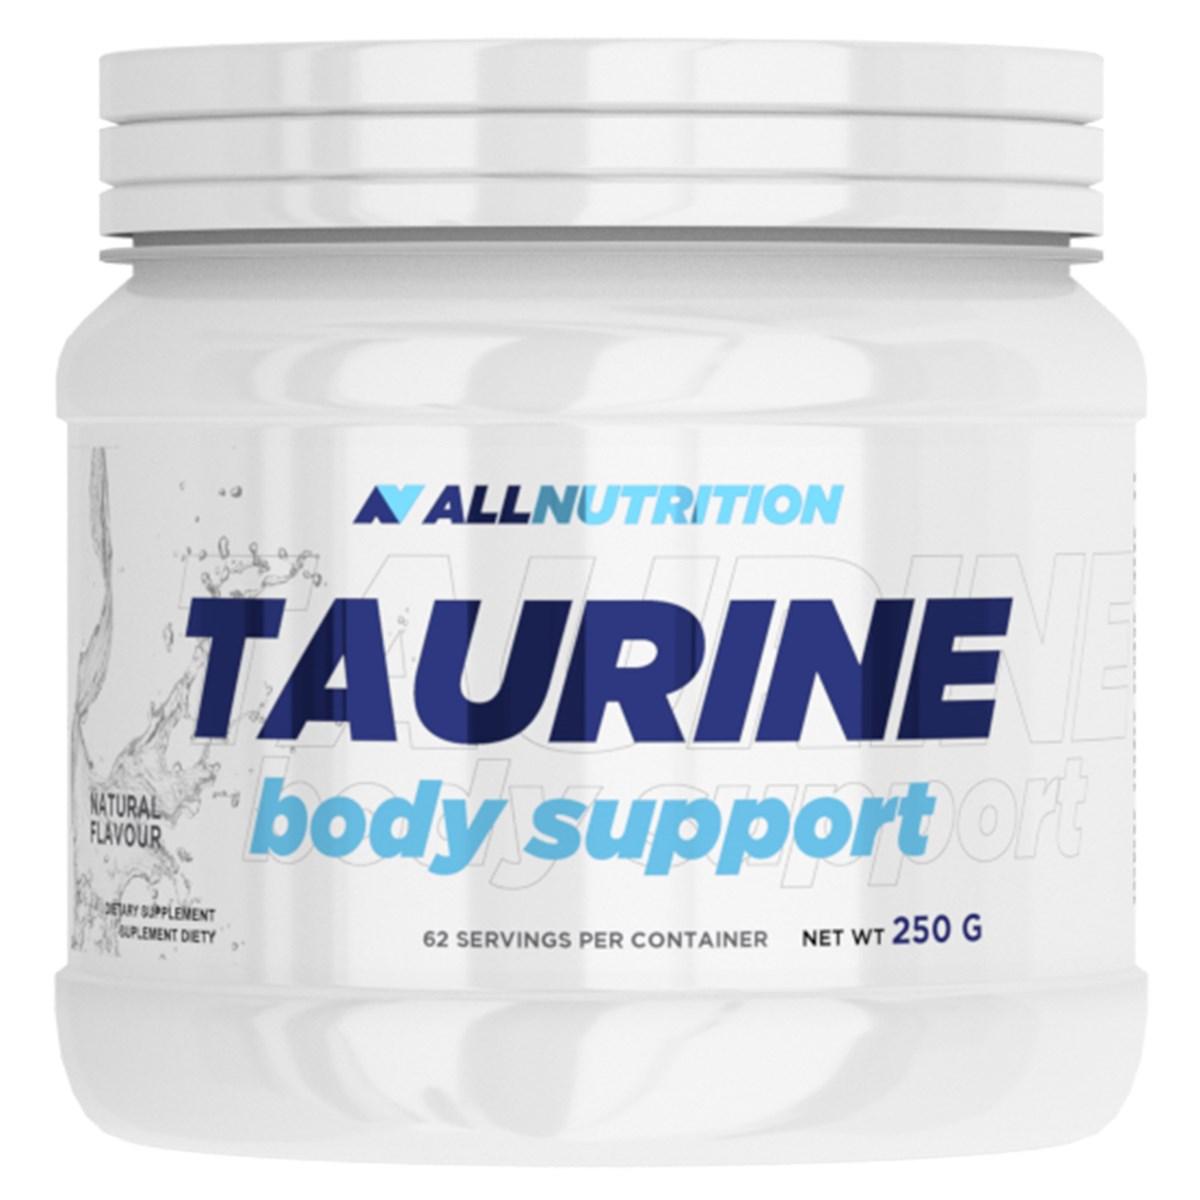 AllNutrition Таурин AllNutrition Taurine Body Support (250 г) олл нутришн, , 0.25 